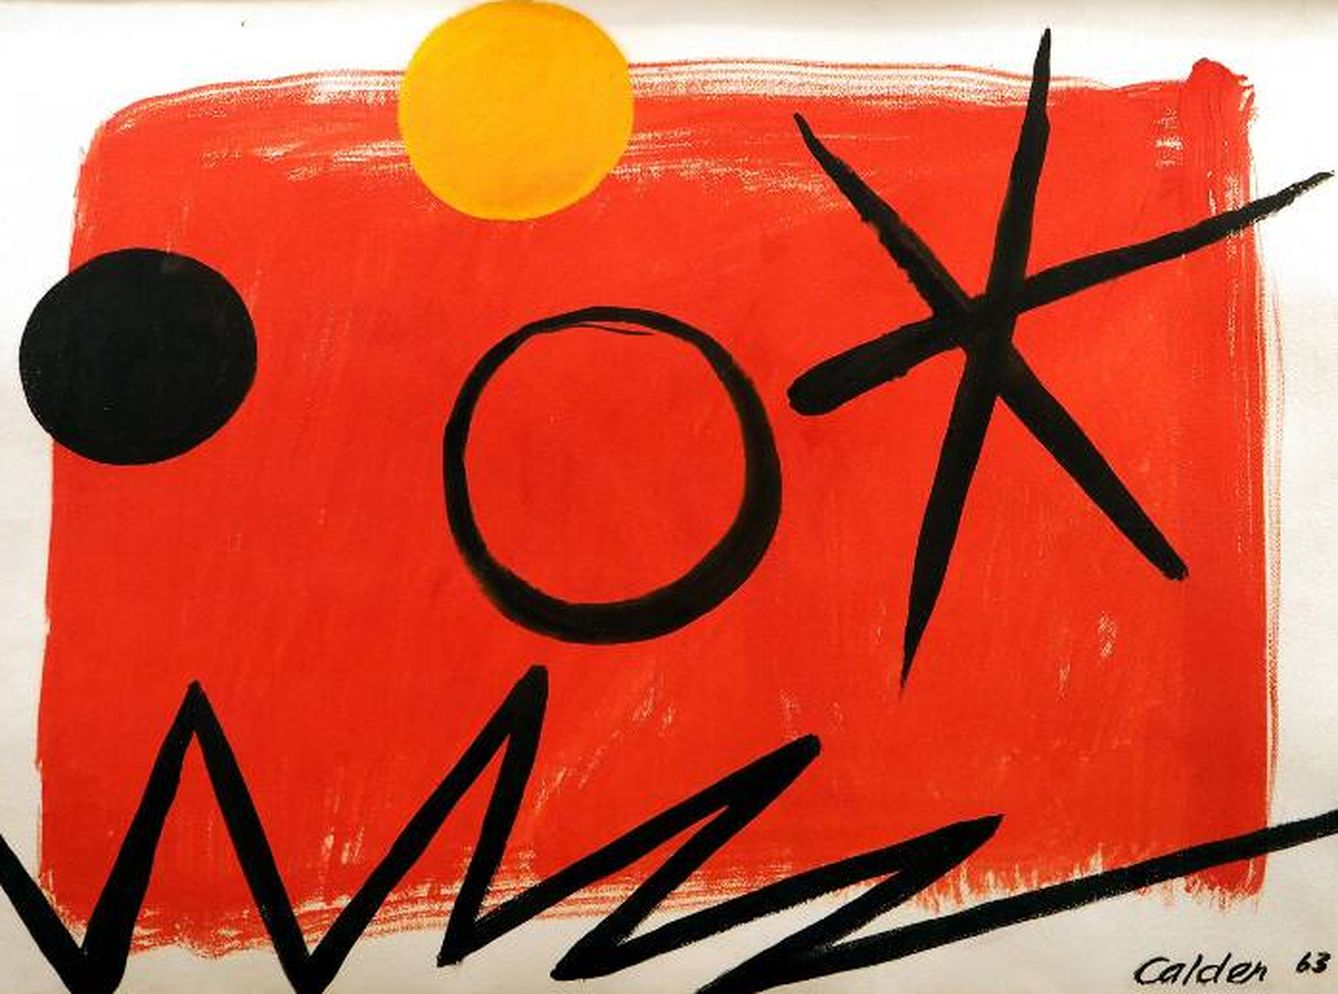 'Orange sun on red ground' (1963), de Alexander Calder